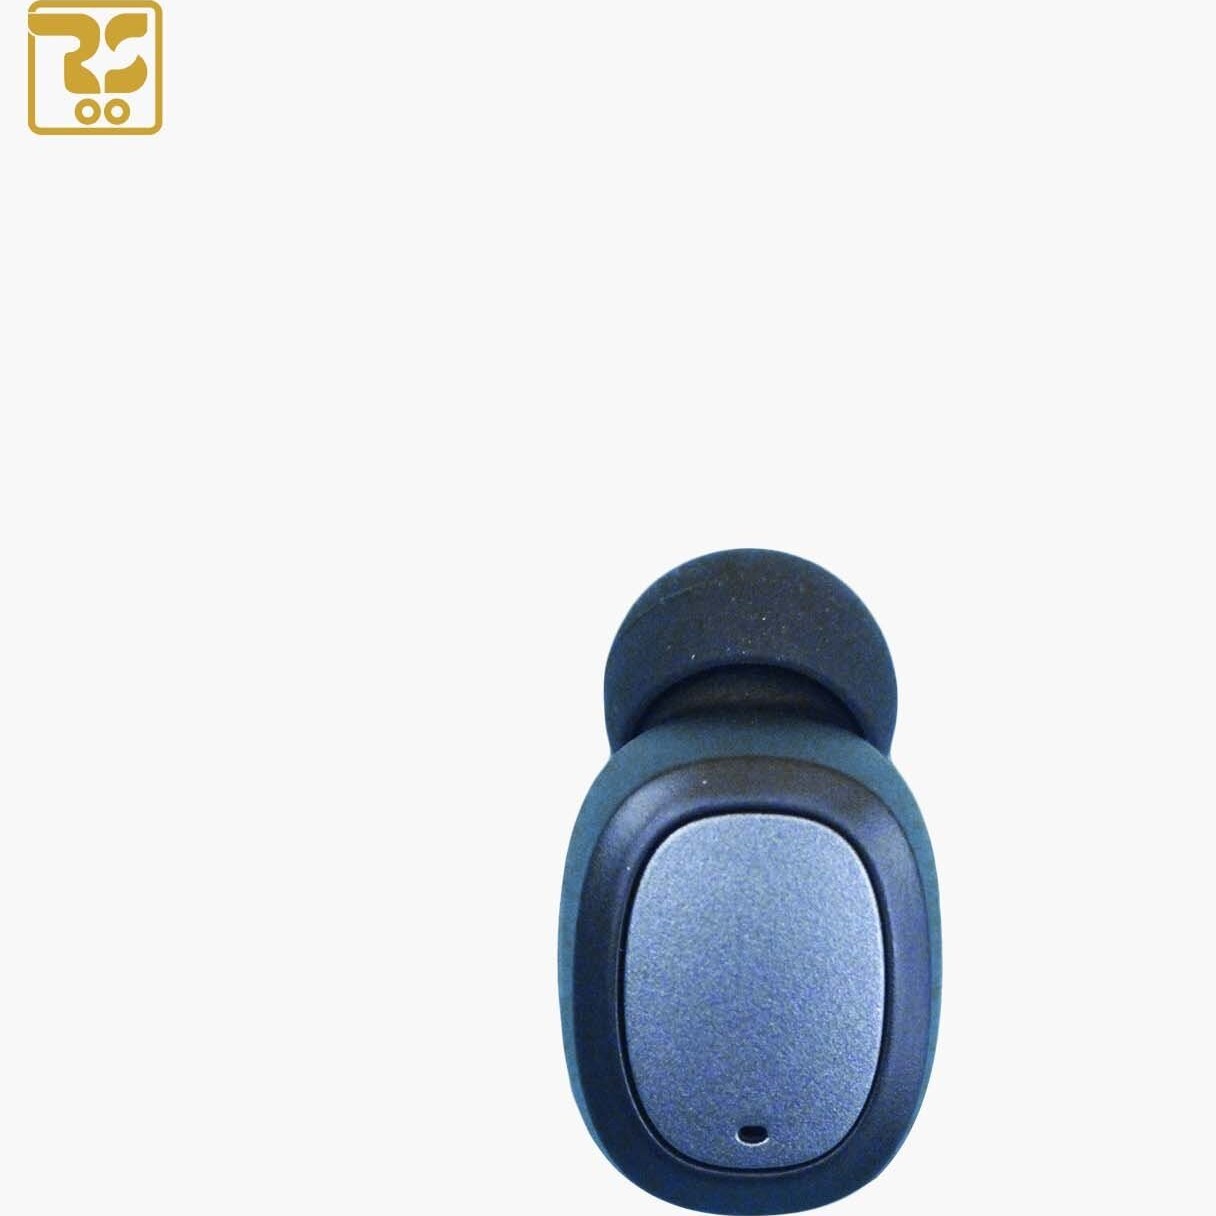 خرید و قیمت هندزفری بلوتوث رومن مدل R101 ا Roman R101 Bluetooth Headset |ترب